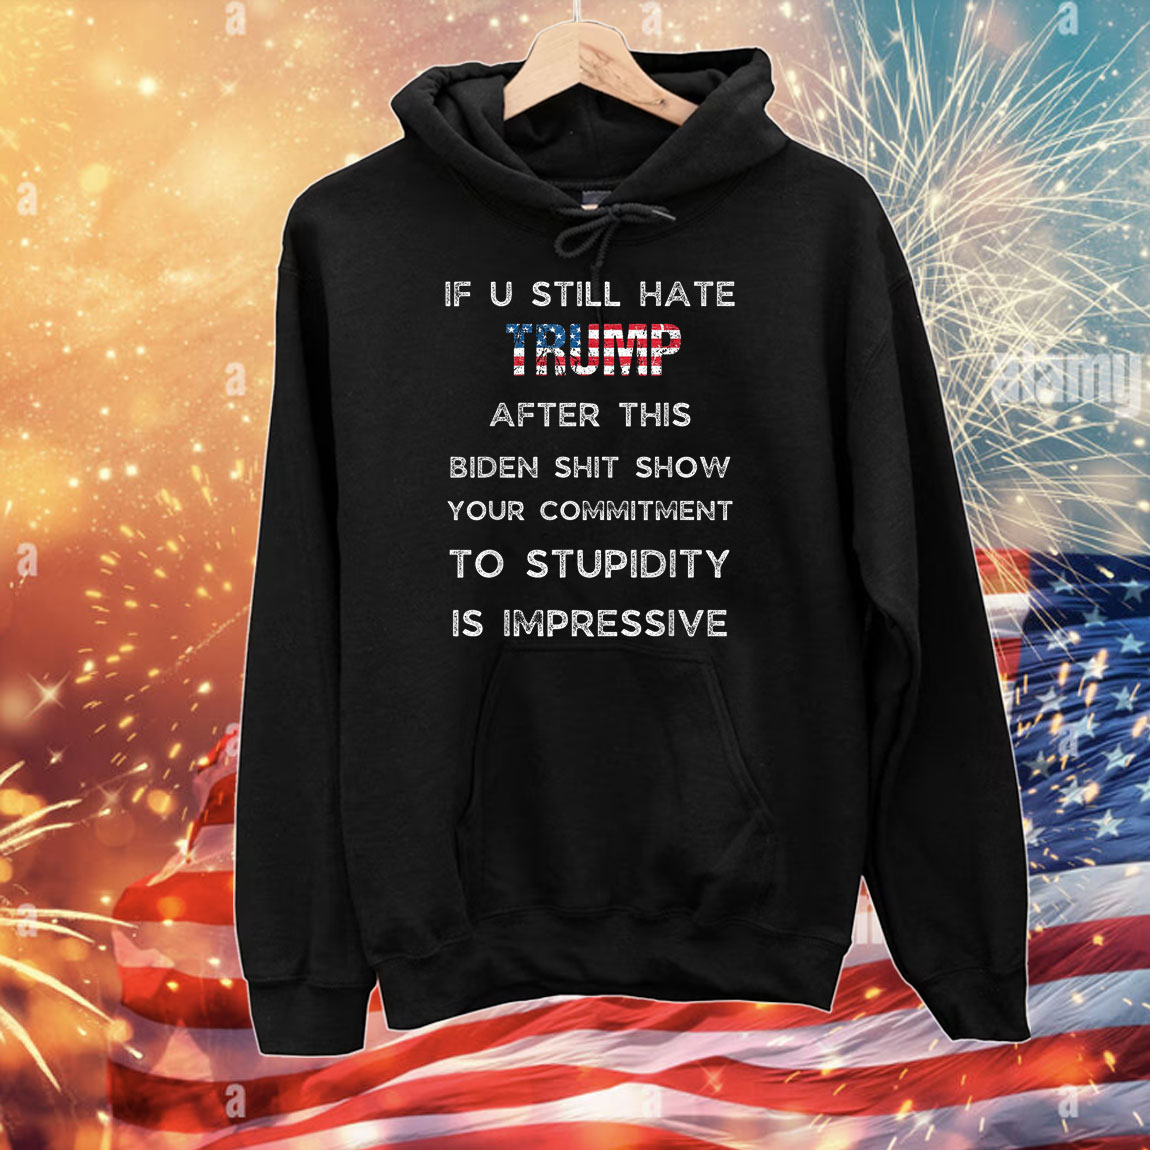 U Still Hate Trump after This Biden Tee Shirts